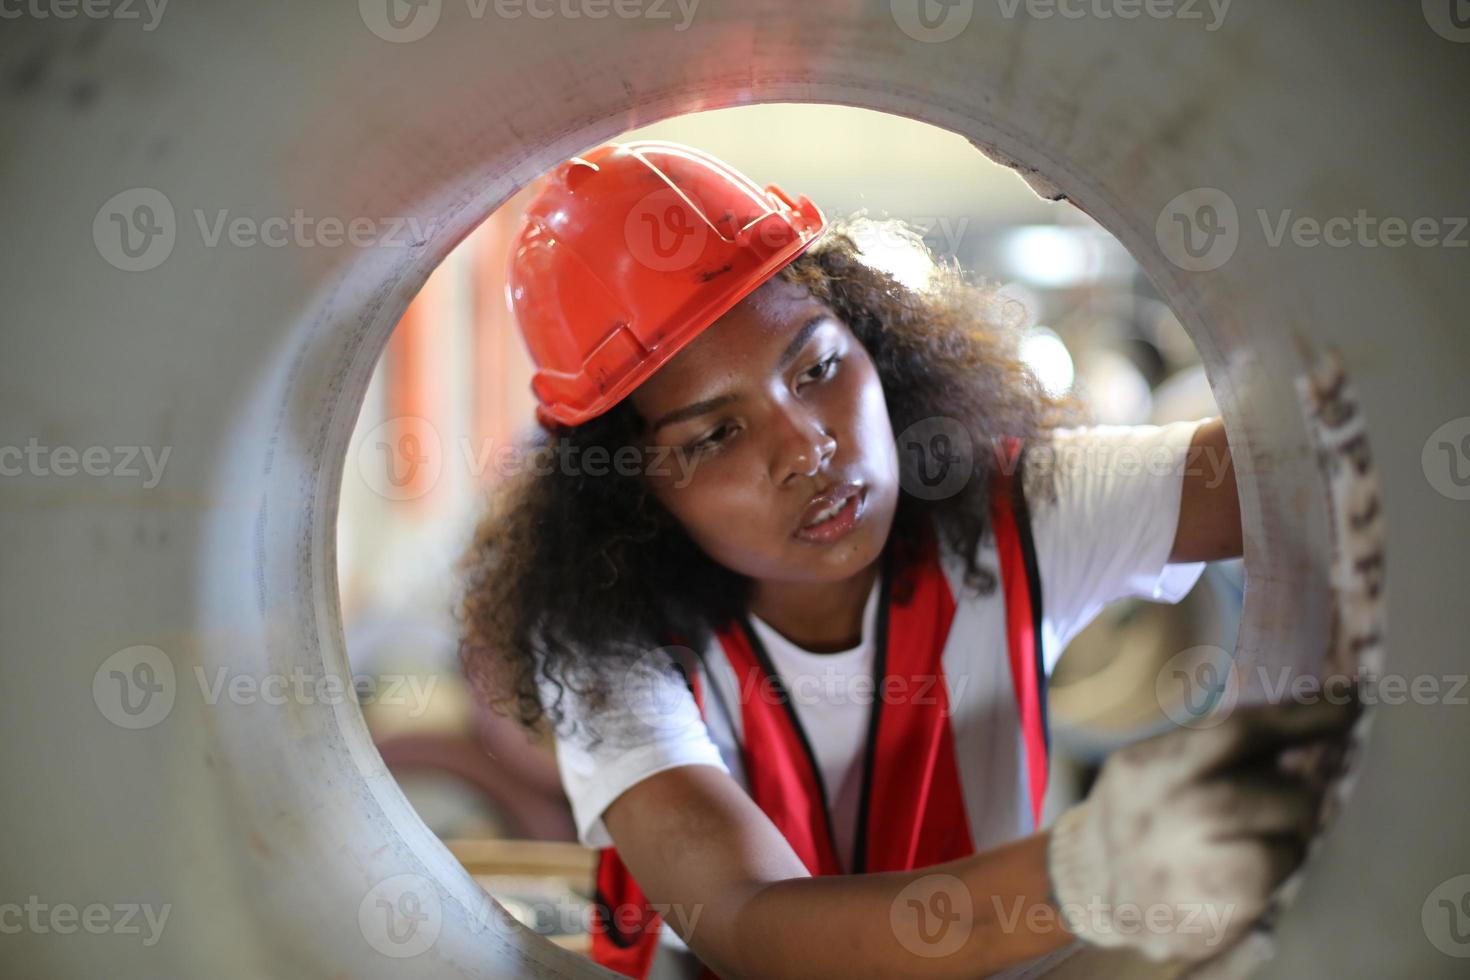 ingegnere industriale femminile che indossa un casco di sicurezza mentre si trova in una fabbrica industriale pesante. la manutenzione cercando di lavorare su macchinari industriali e controllare l'installazione del sistema di sicurezza in fabbrica. foto